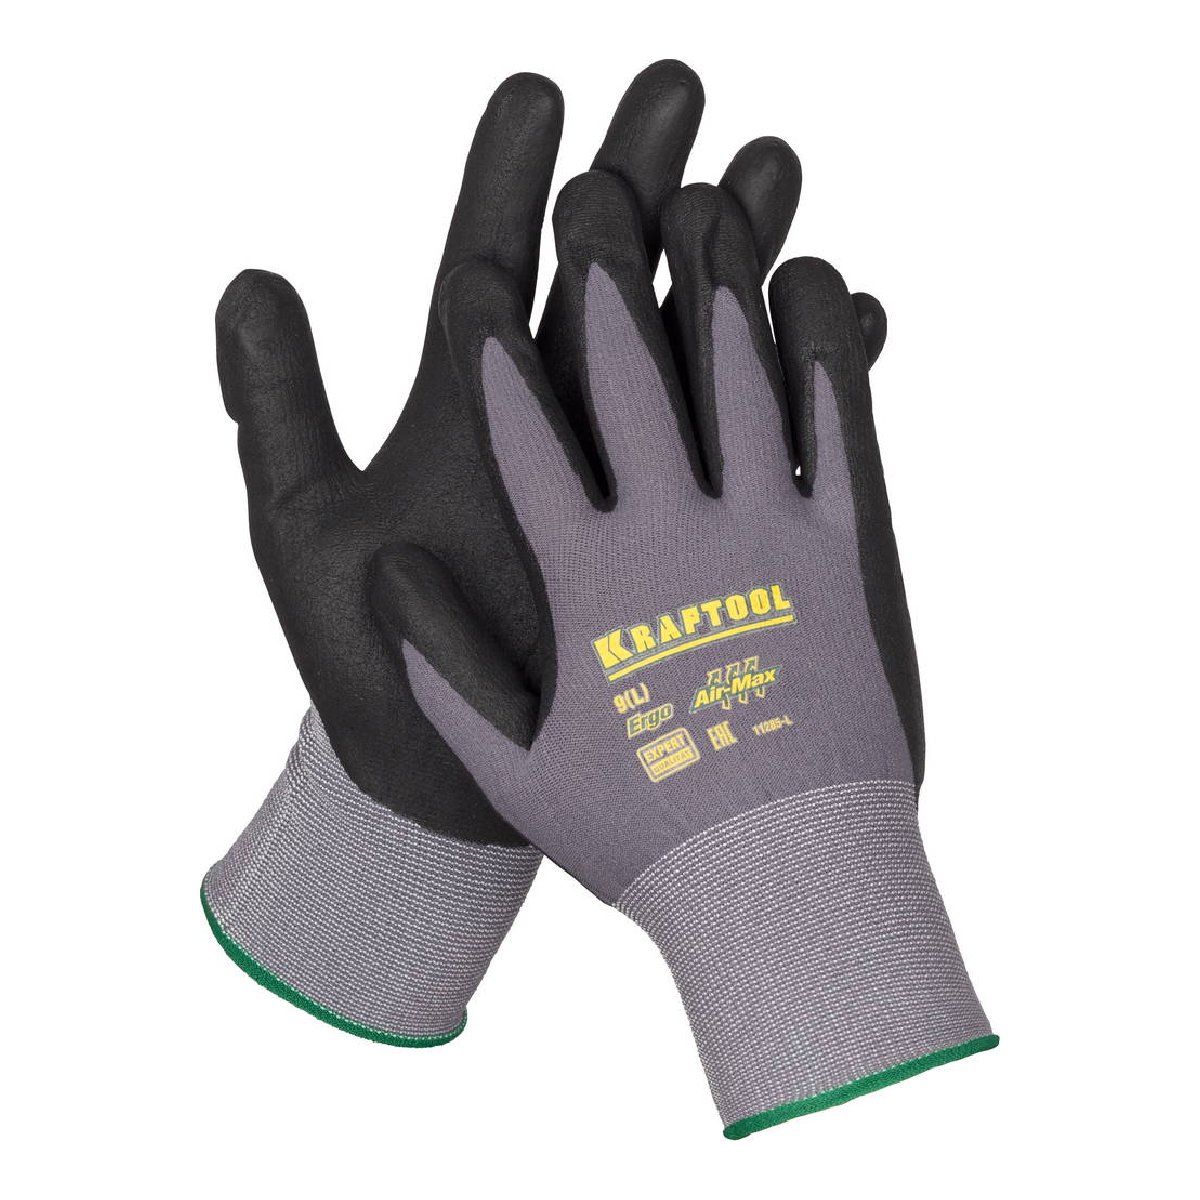 Эластичные перчатки KRAFTOOL Expert р. M со вспененным нитриловым покрытием (11285-M)Купить